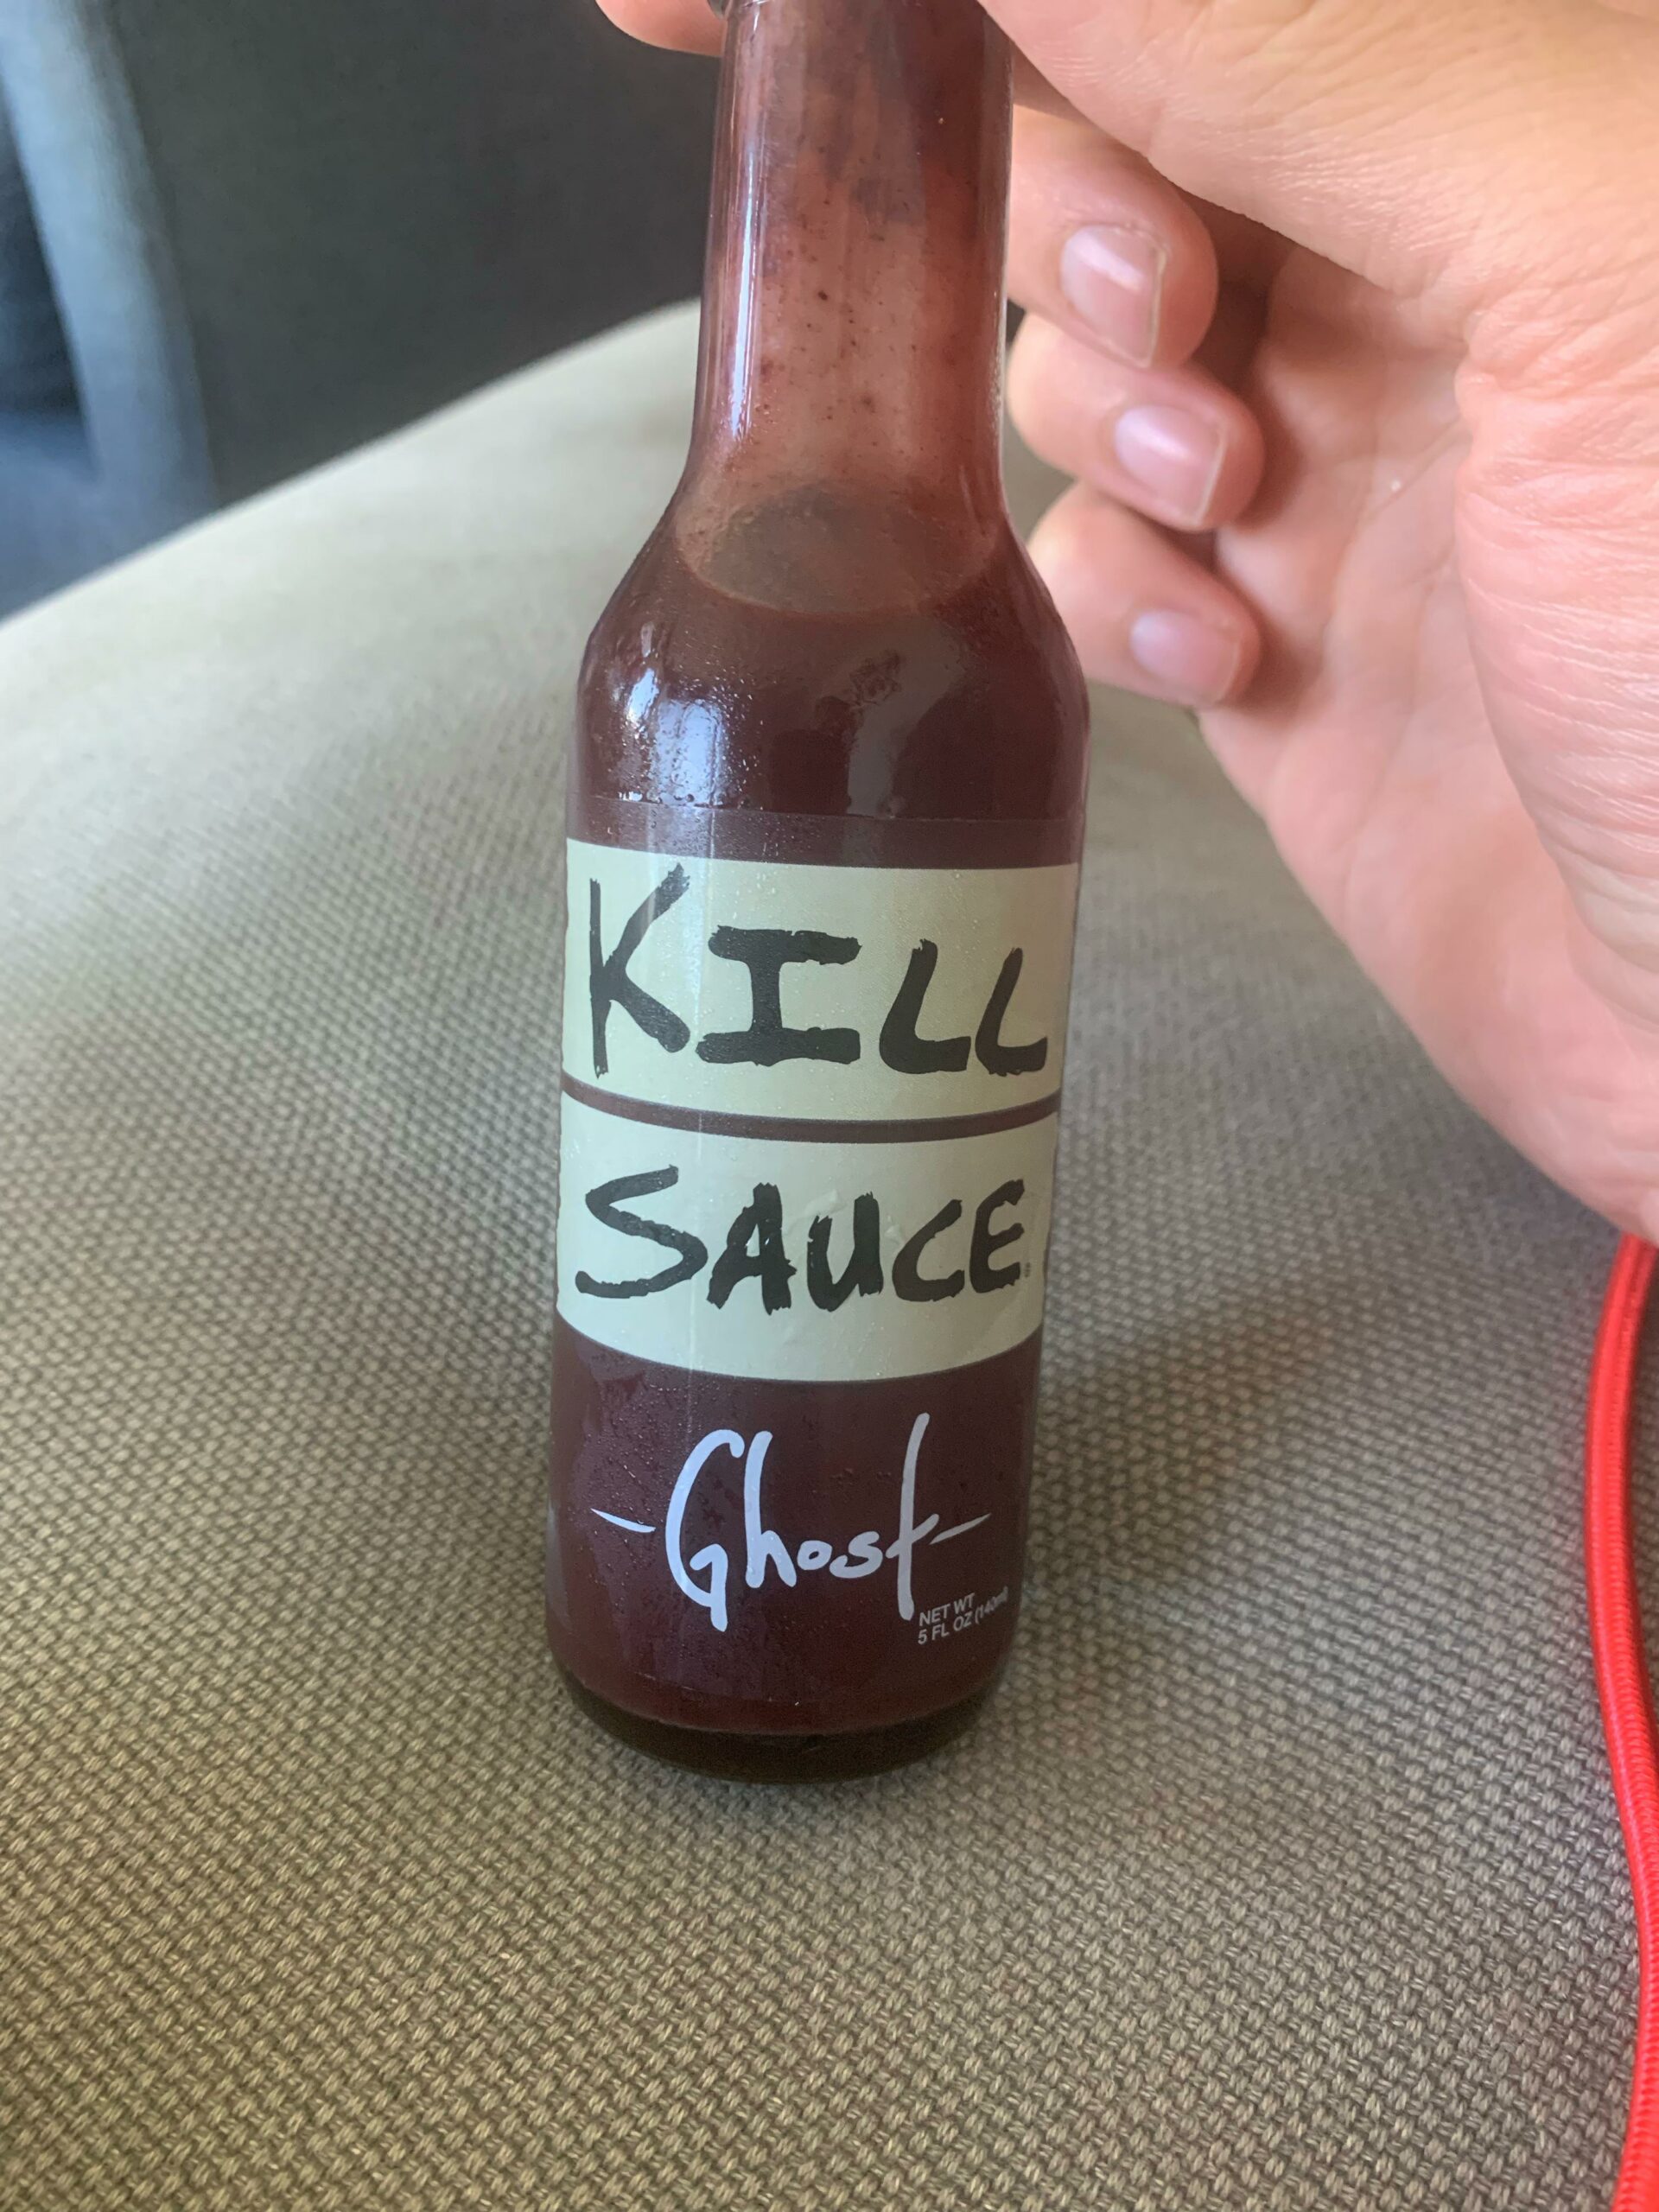 New hot sauce pickup - Chili Chili